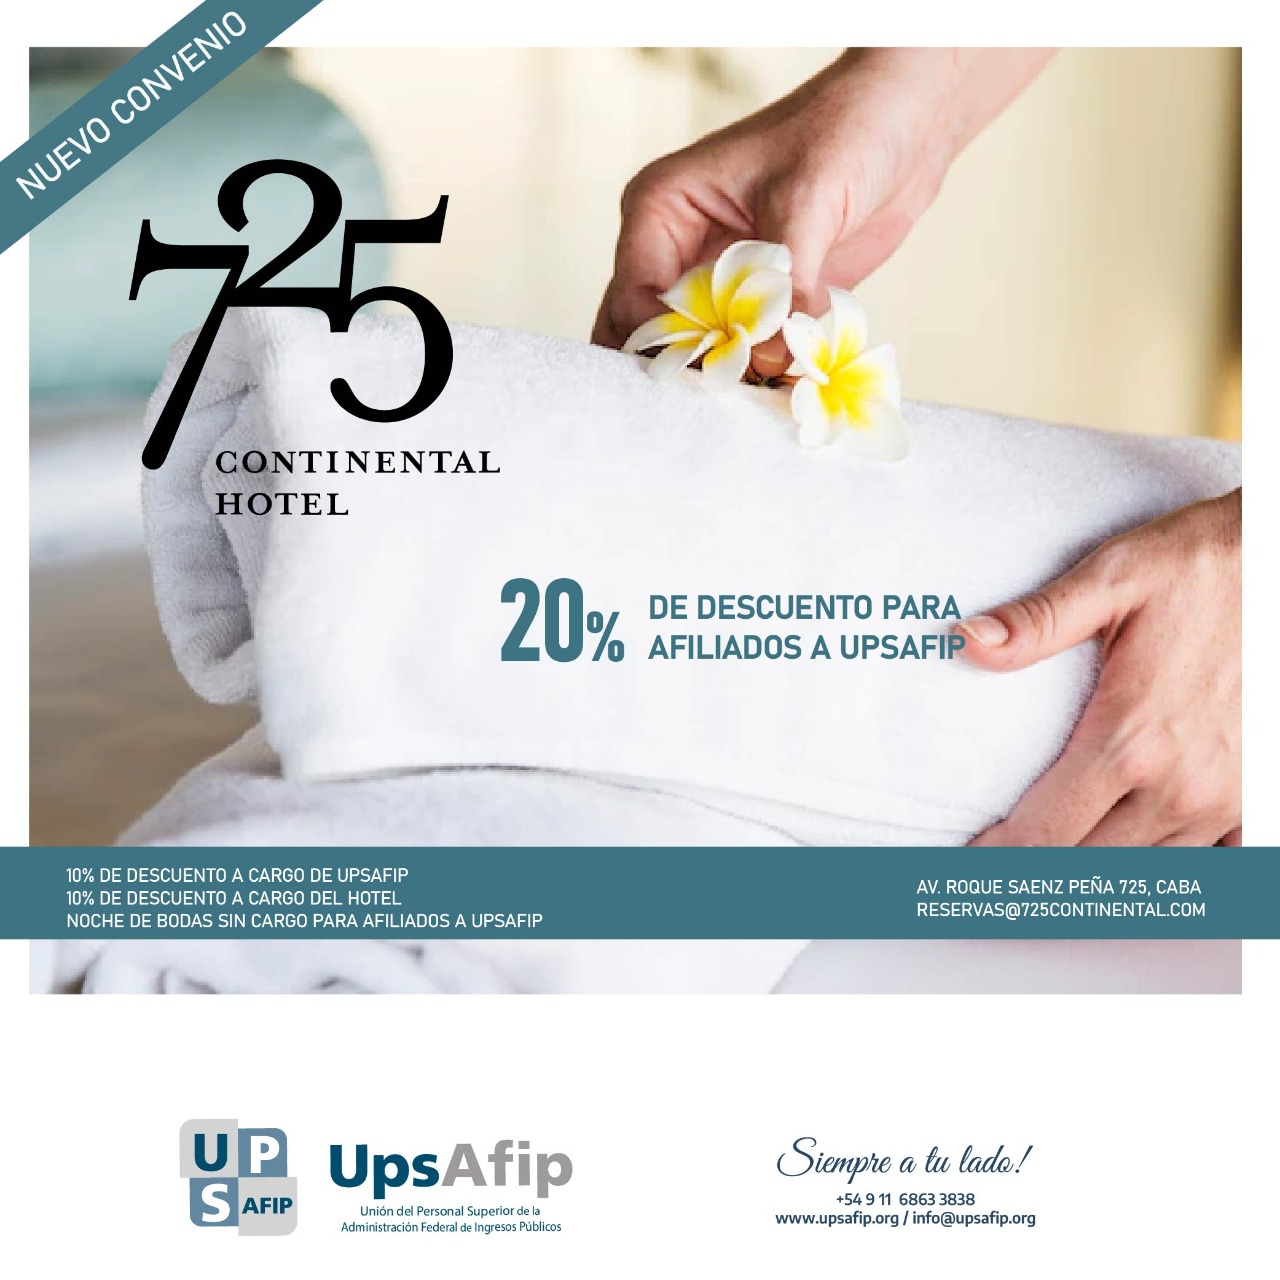 Nuevo convenio: 725 Continental Hotel 20% de descuento para afiliados a UPSAFIP